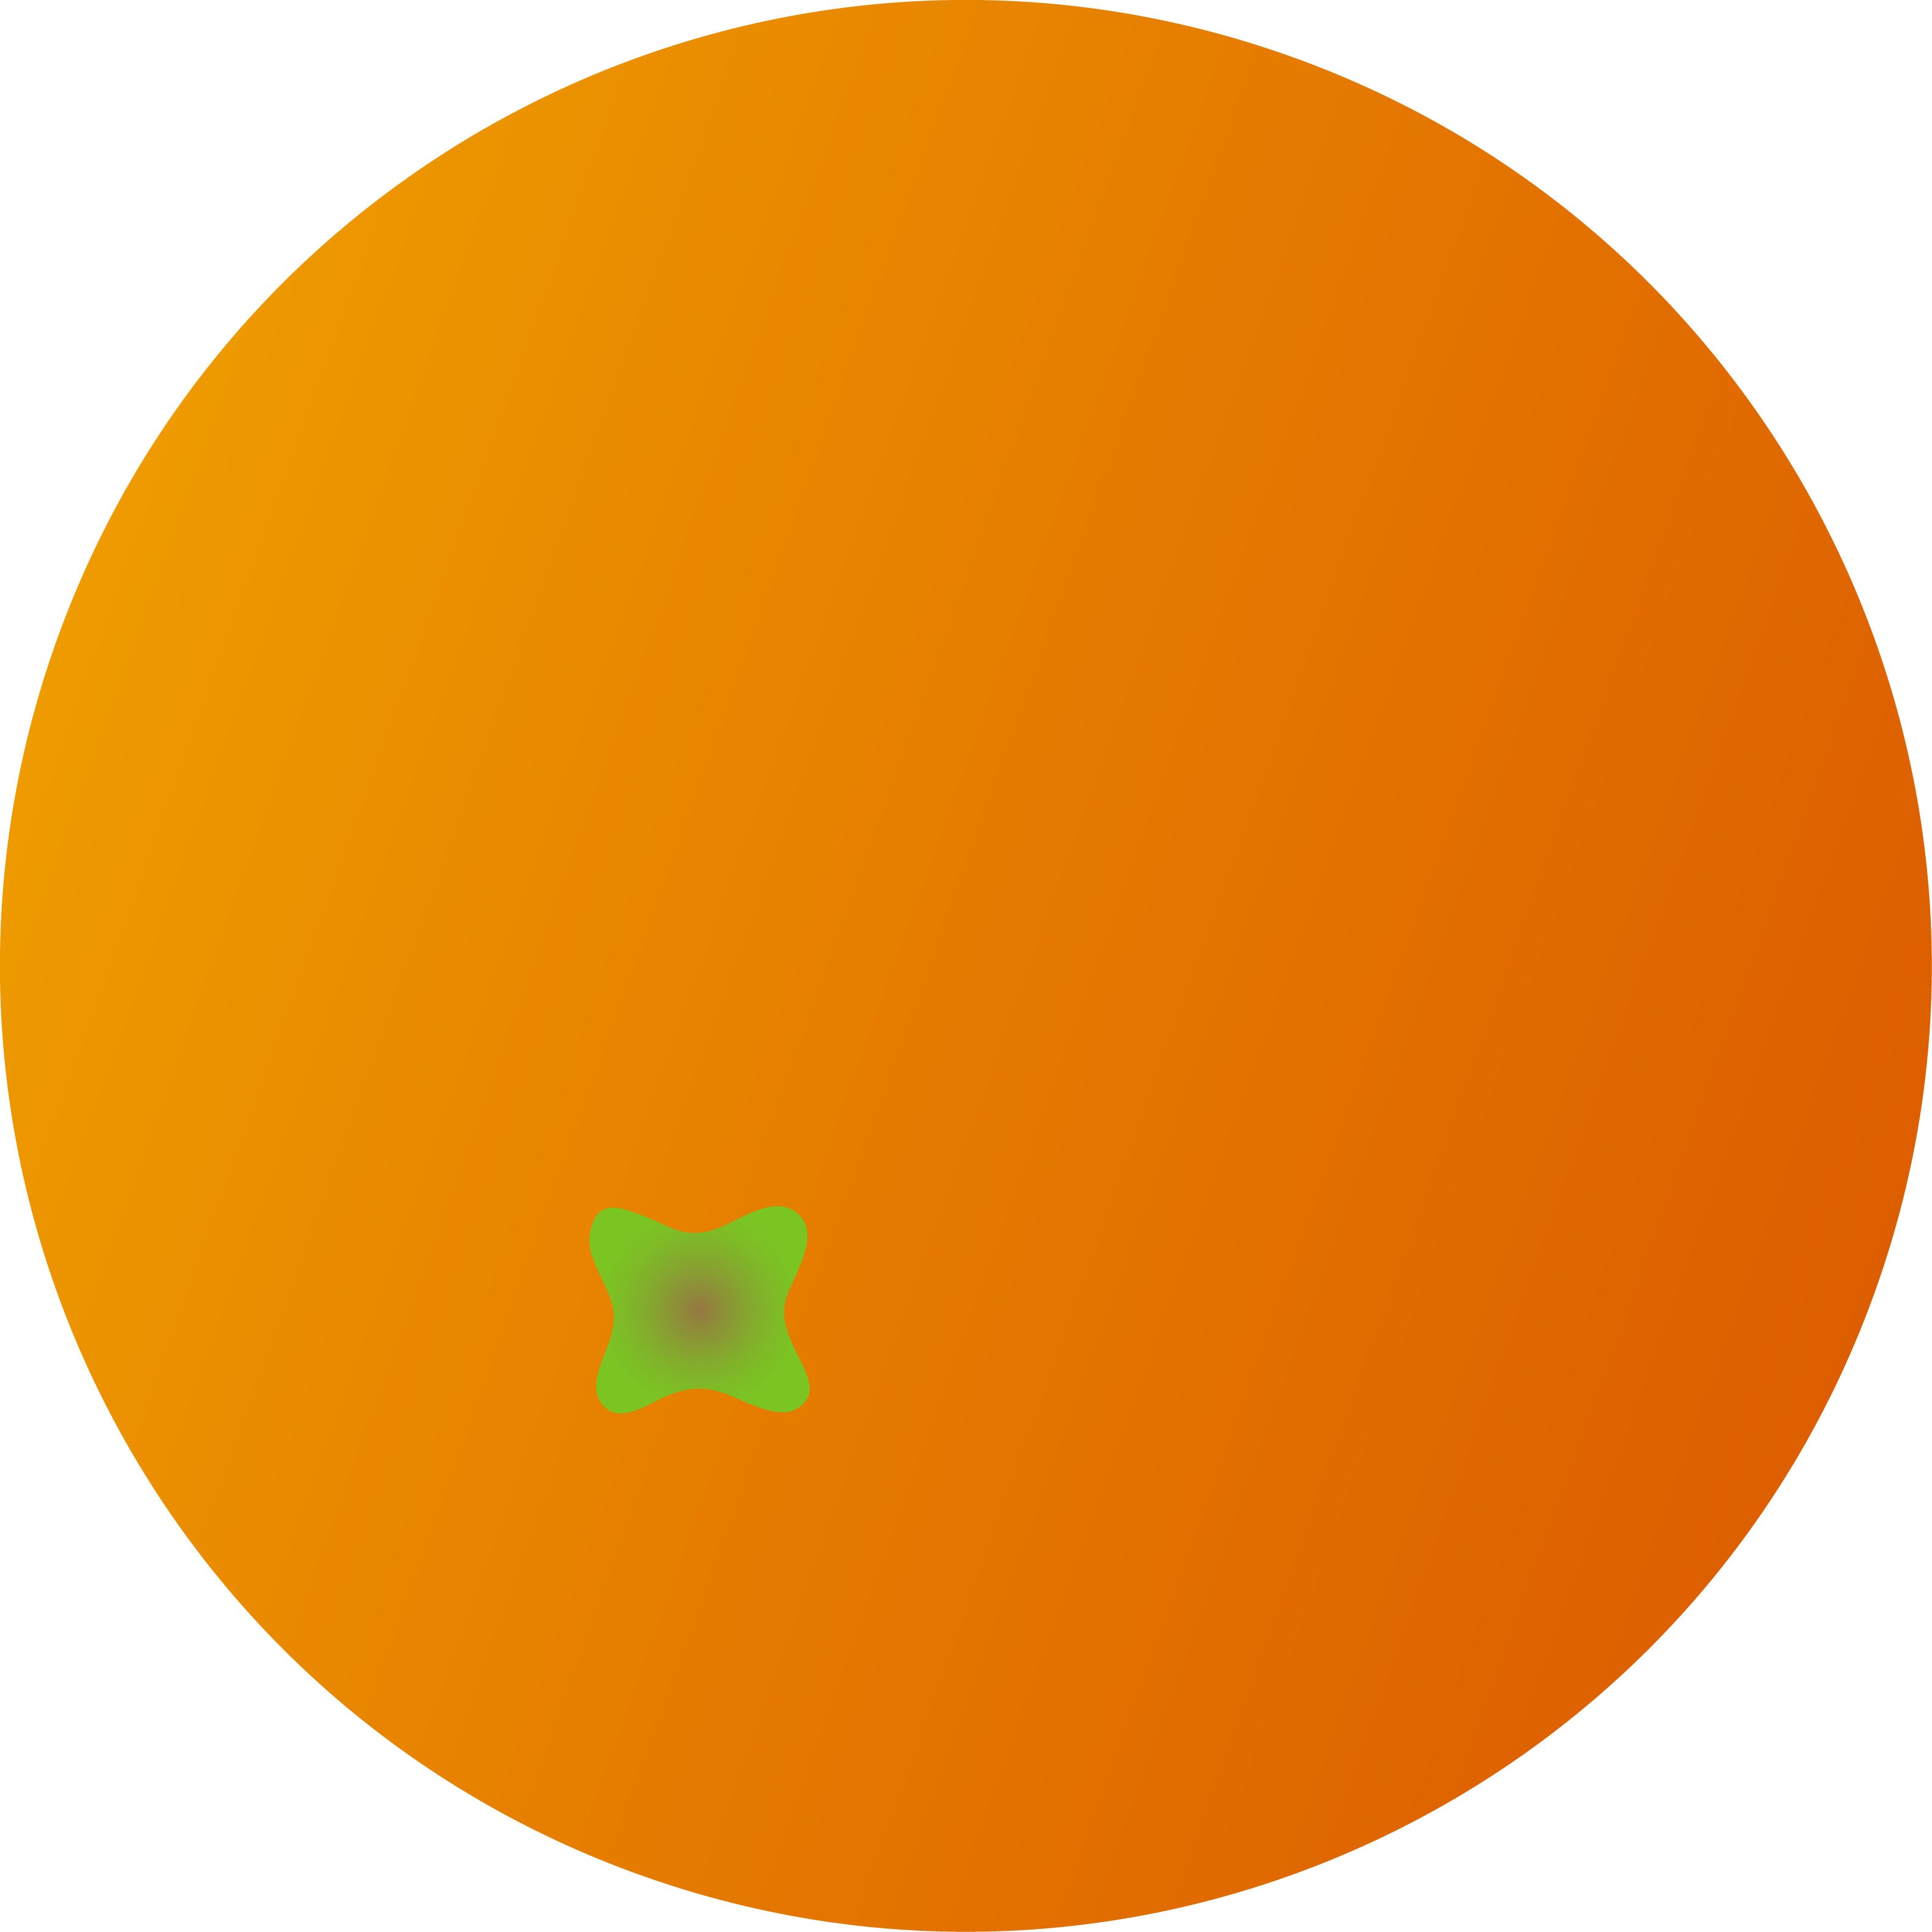 Whole Round Orange Fruit Cartoon Orange No Background